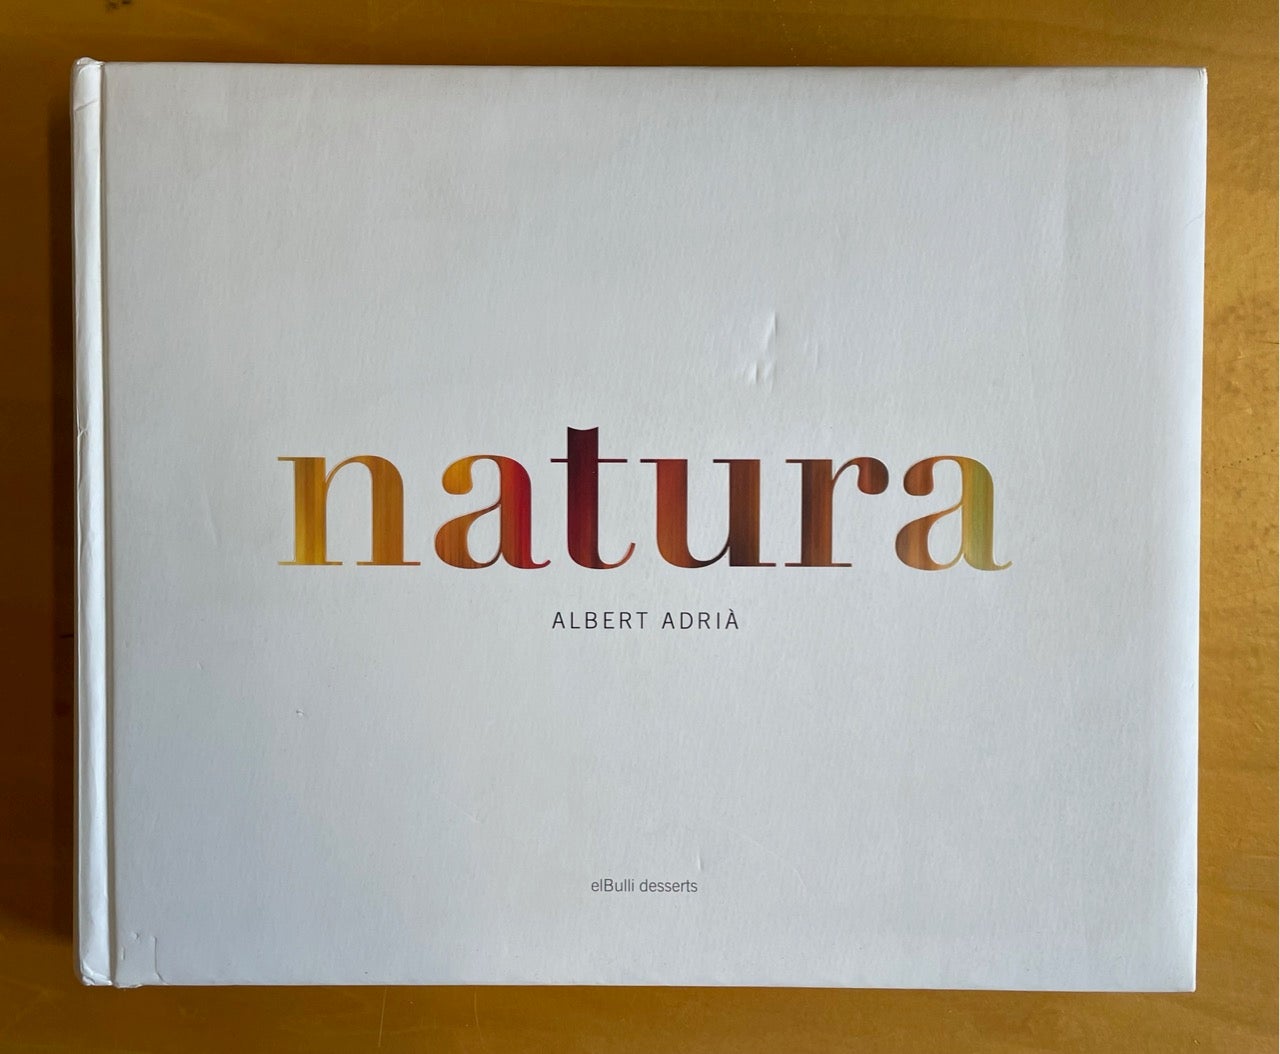 Item #8298 Natura: elBulli desserts. Albert Adria, 1969 -, Albert Adria i. Acosta.